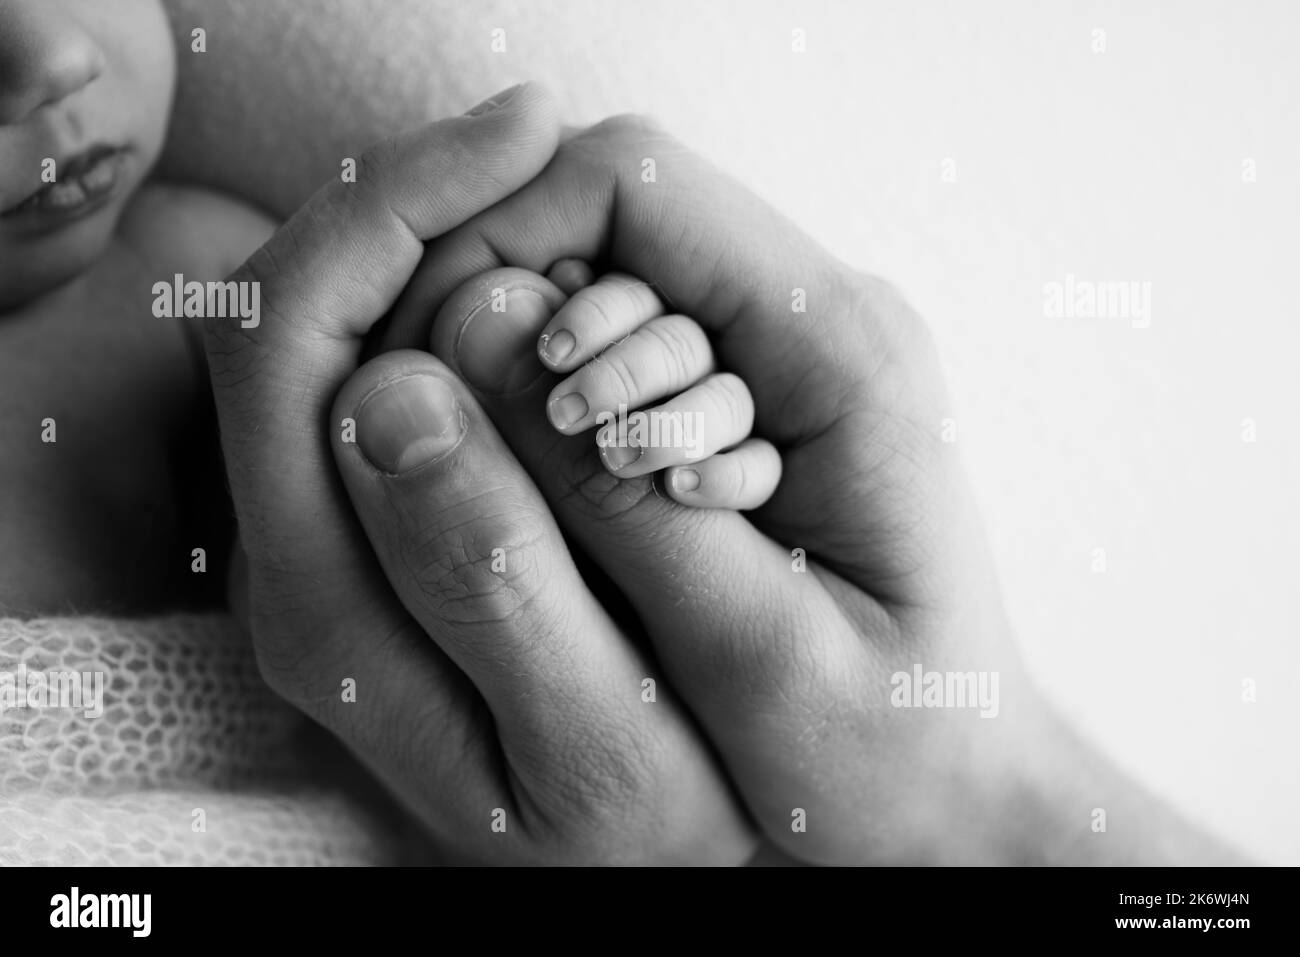 Un recién nacido se aferó al dedo de la madre, del papá. Las manos de los padres y del bebé se acercan. Un niño confía y la mantiene apretada. Foto de stock